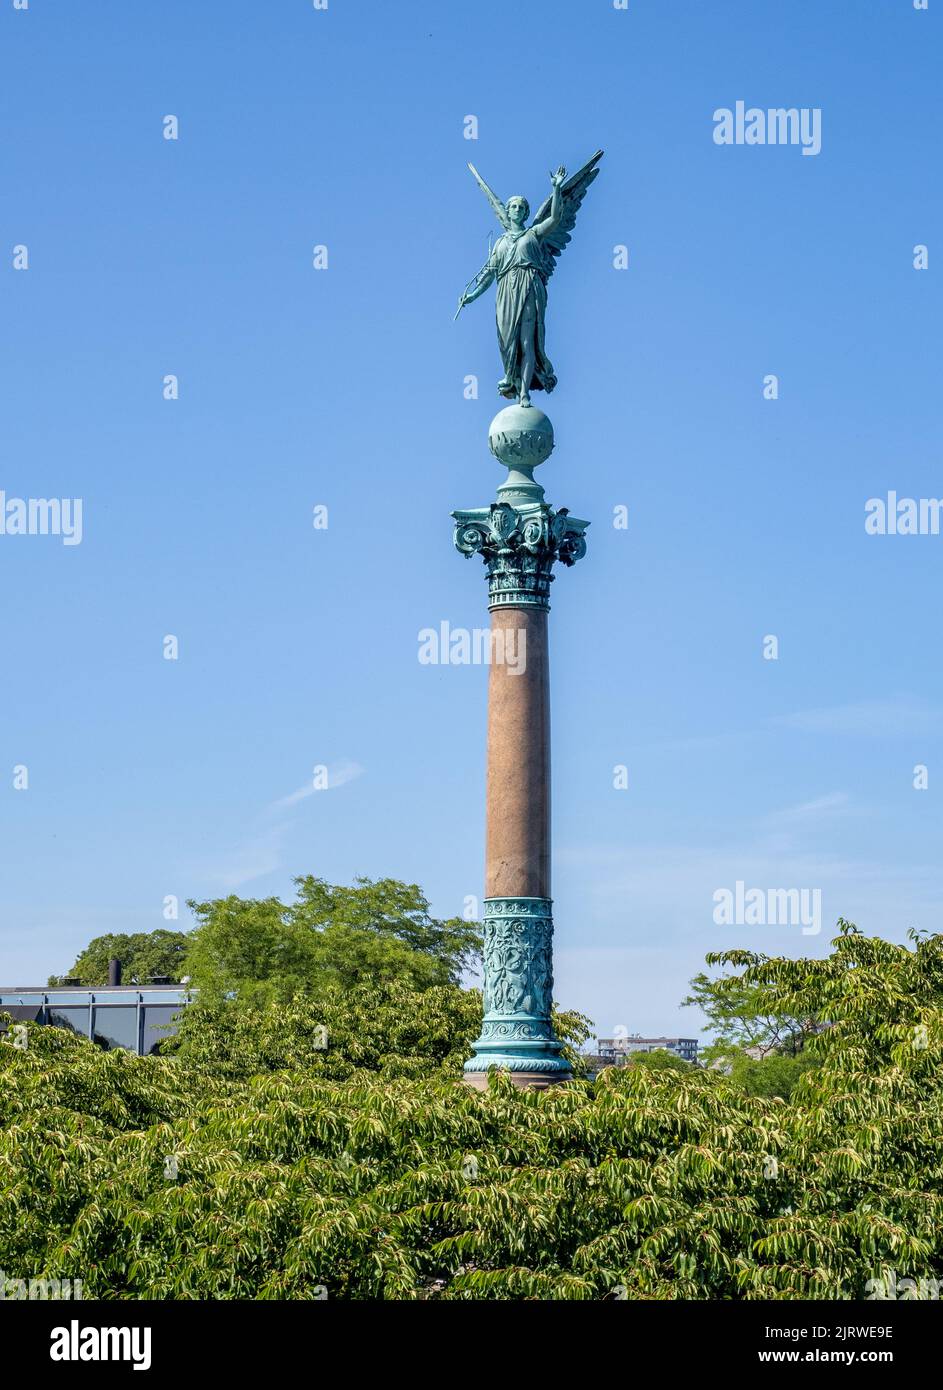 Statue de bronze de la victoire aidée de Ferdinand Edvard Ring couronnant la colonne Ivar Huitfeldt à Langelinie à Copenhague, Danemark Banque D'Images